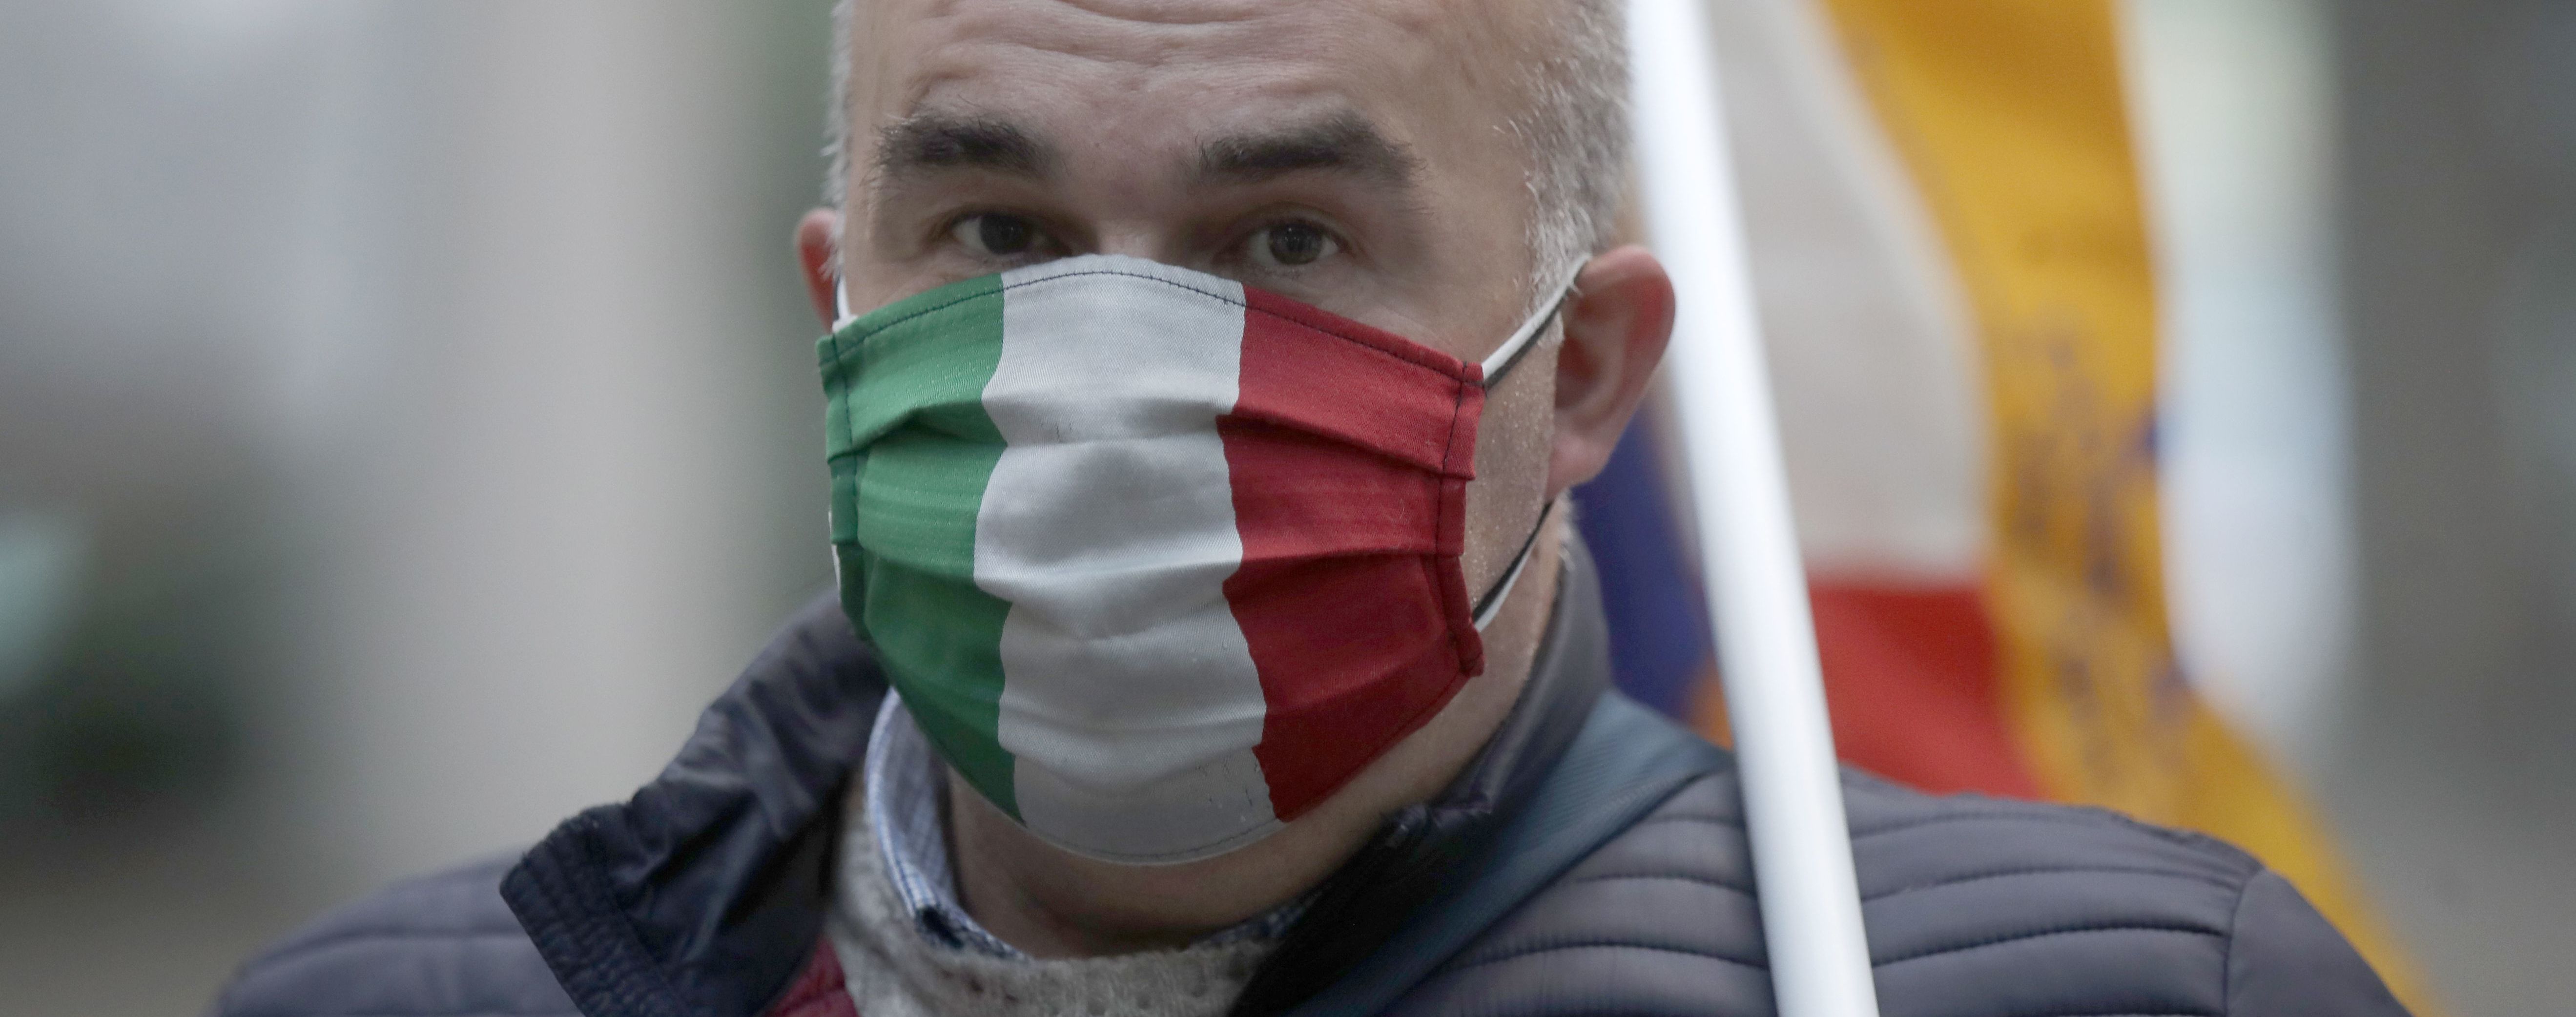 Италия ослабила карантин: могут ли в страну въехать украинцы